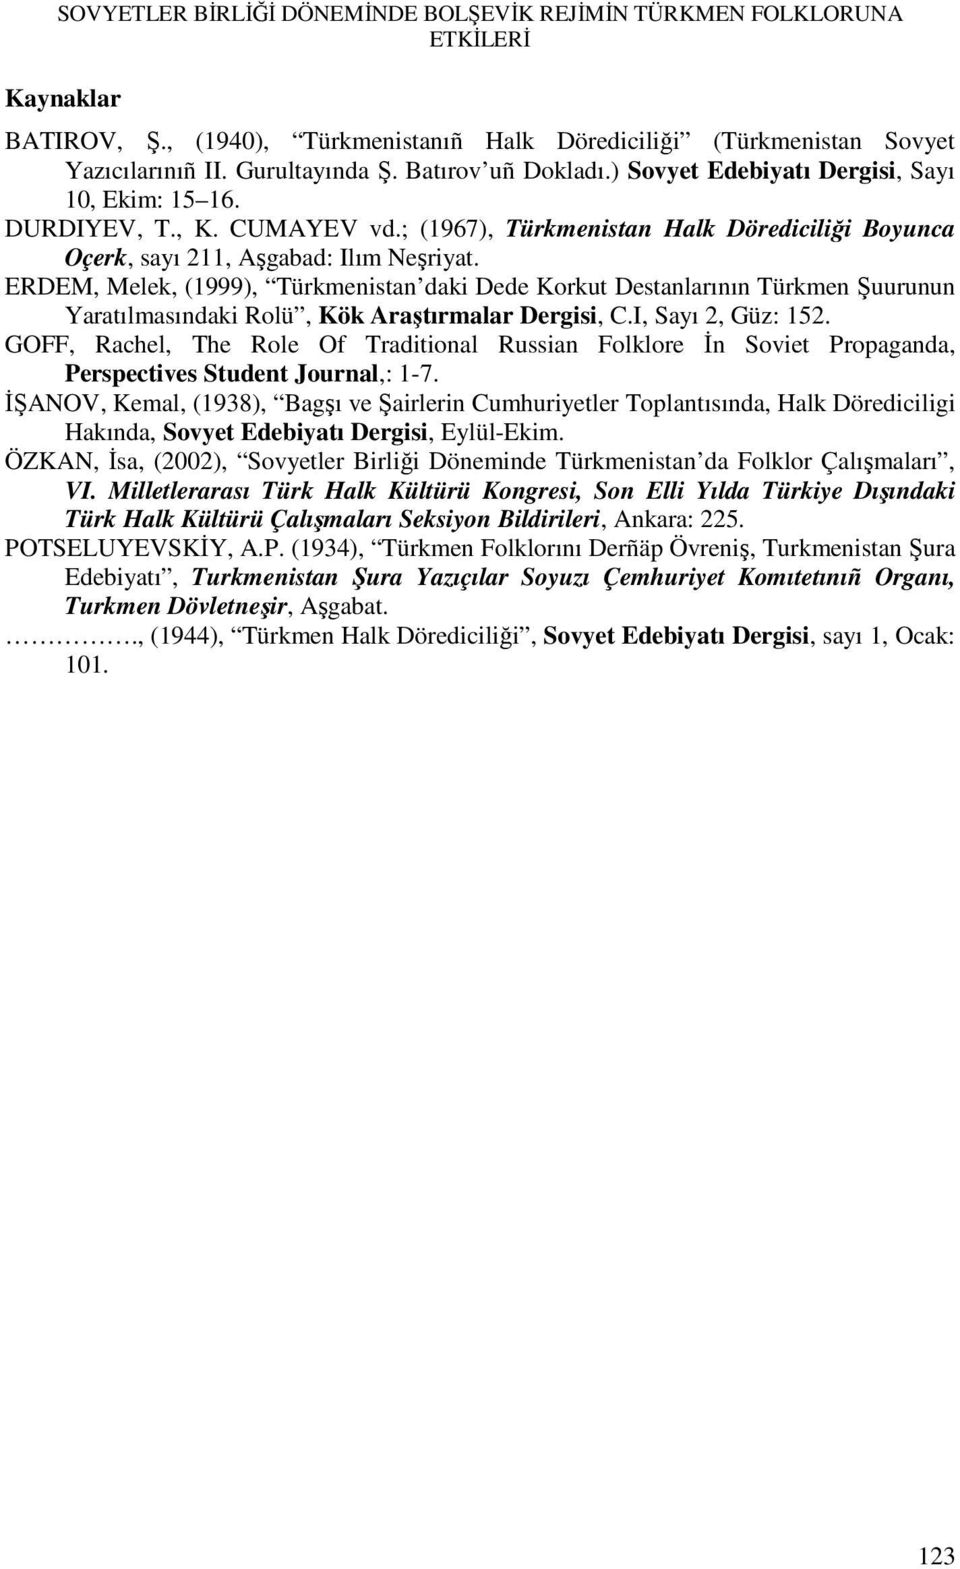 ERDEM, Melek, (1999), Türkmenistan daki Dede Korkut Destanlarının Türkmen Şuurunun Yaratılmasındaki Rolü, Kök Araştırmalar Dergisi, C.I, Sayı 2, Güz: 152.